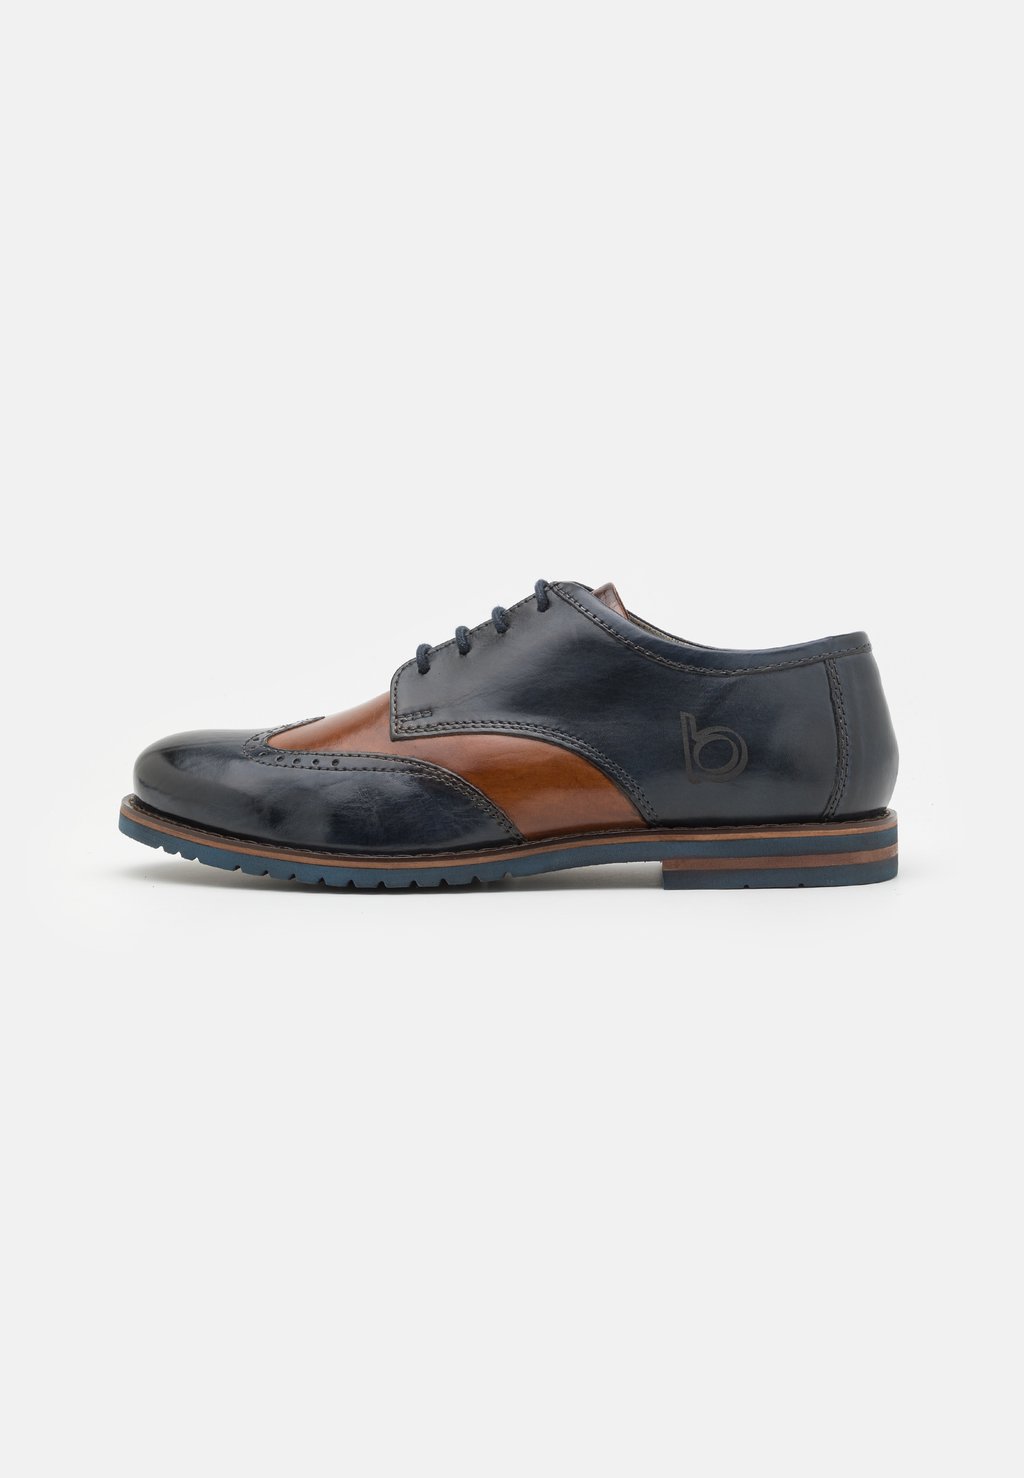 Элегантные туфли на шнуровке Caleo Exko bugatti, цвет dark blue/cognac